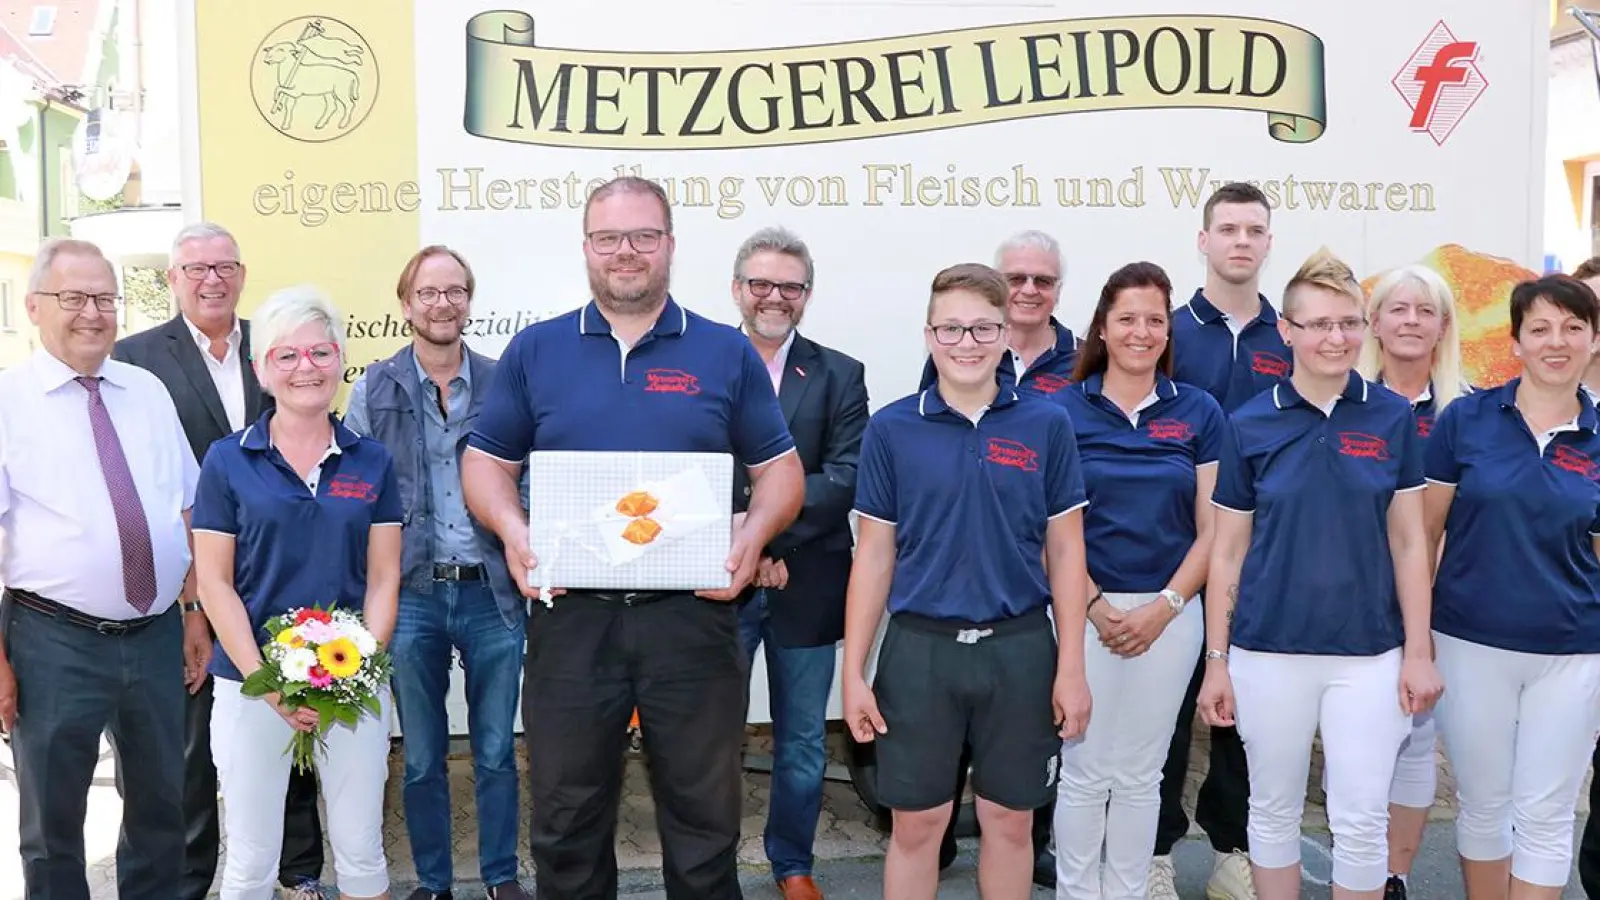 Lokalnachrichten: Metzgerei Leipold gewinnt (Foto: Ulrich Förtsch/Handwerkskammer für Oberfranken Bayreuth)